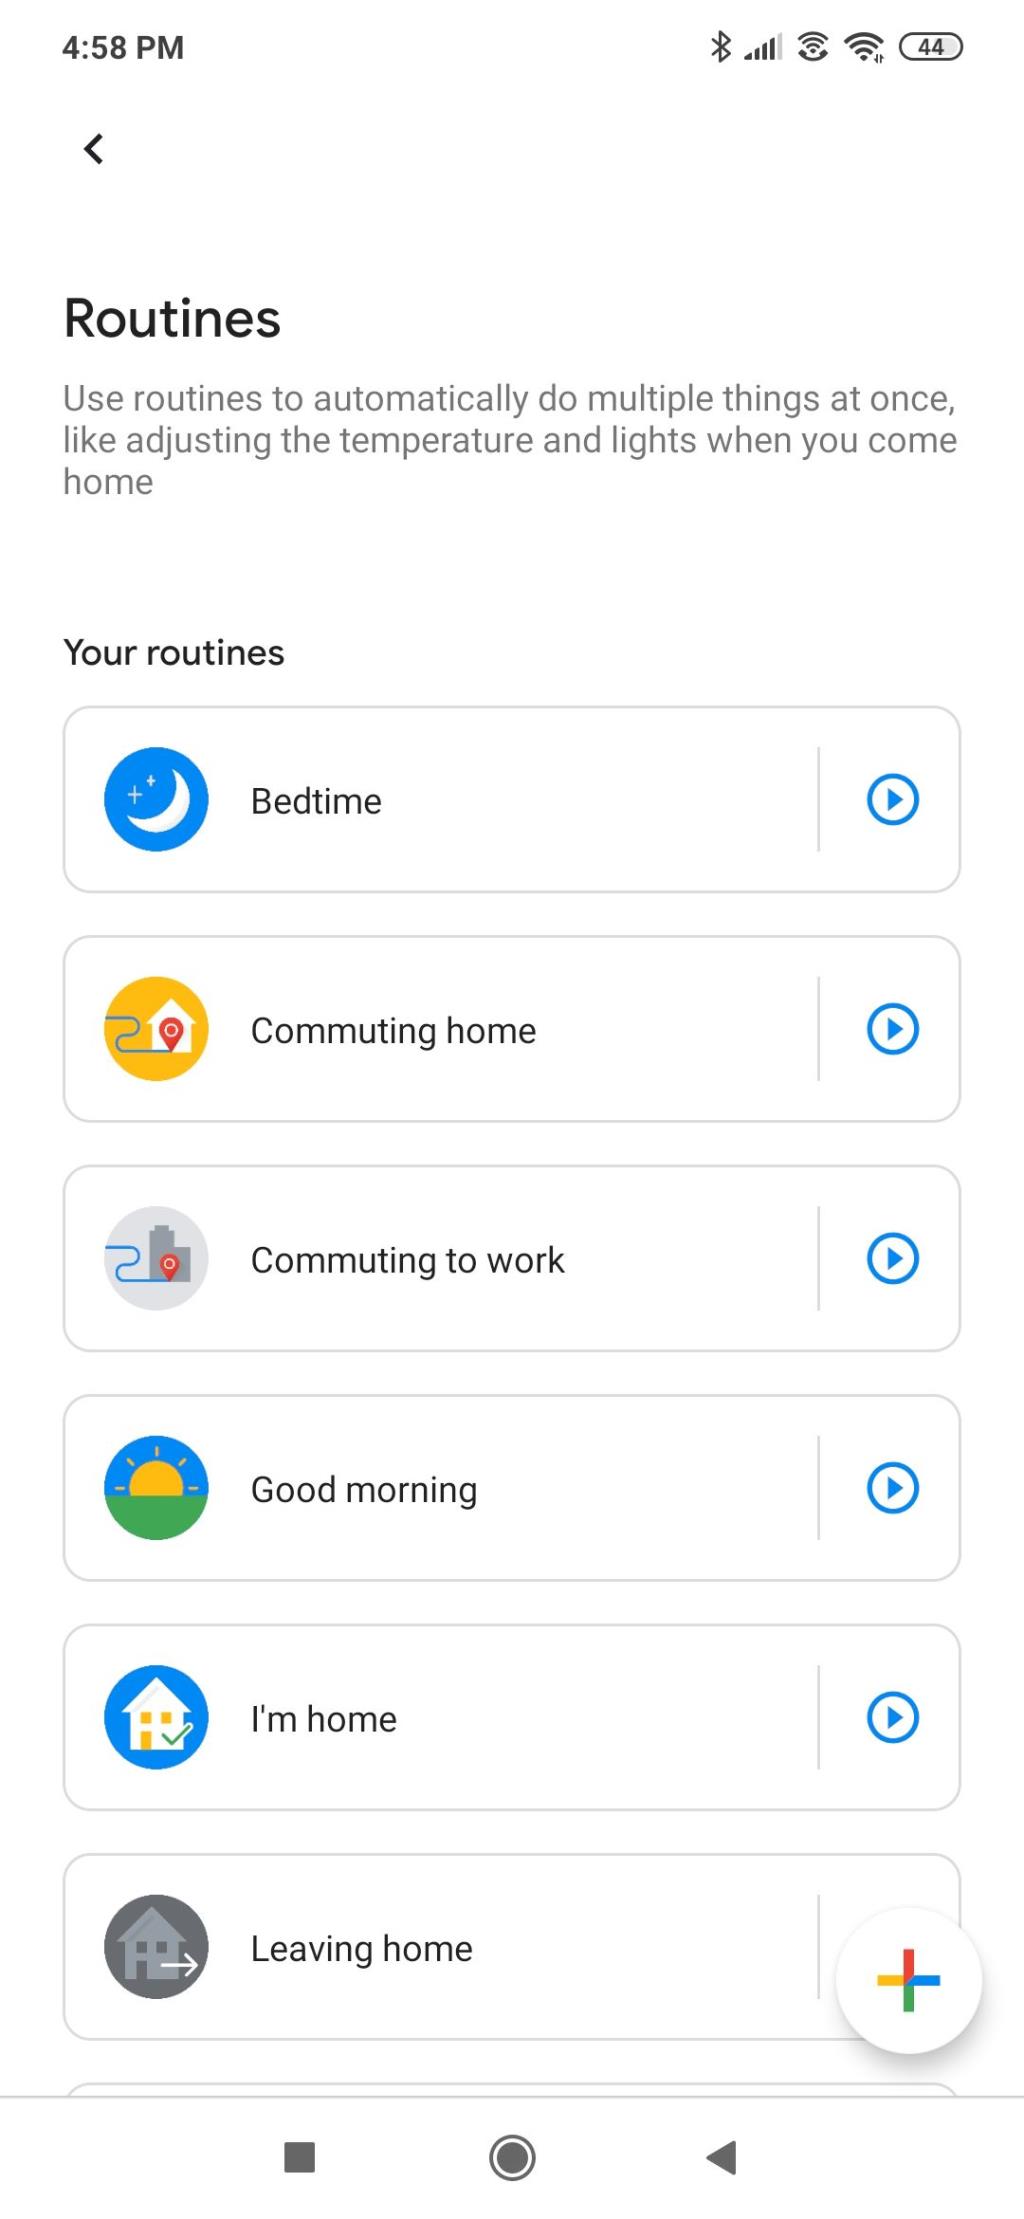 Che cos'è l'app Google Home e a cosa serve?